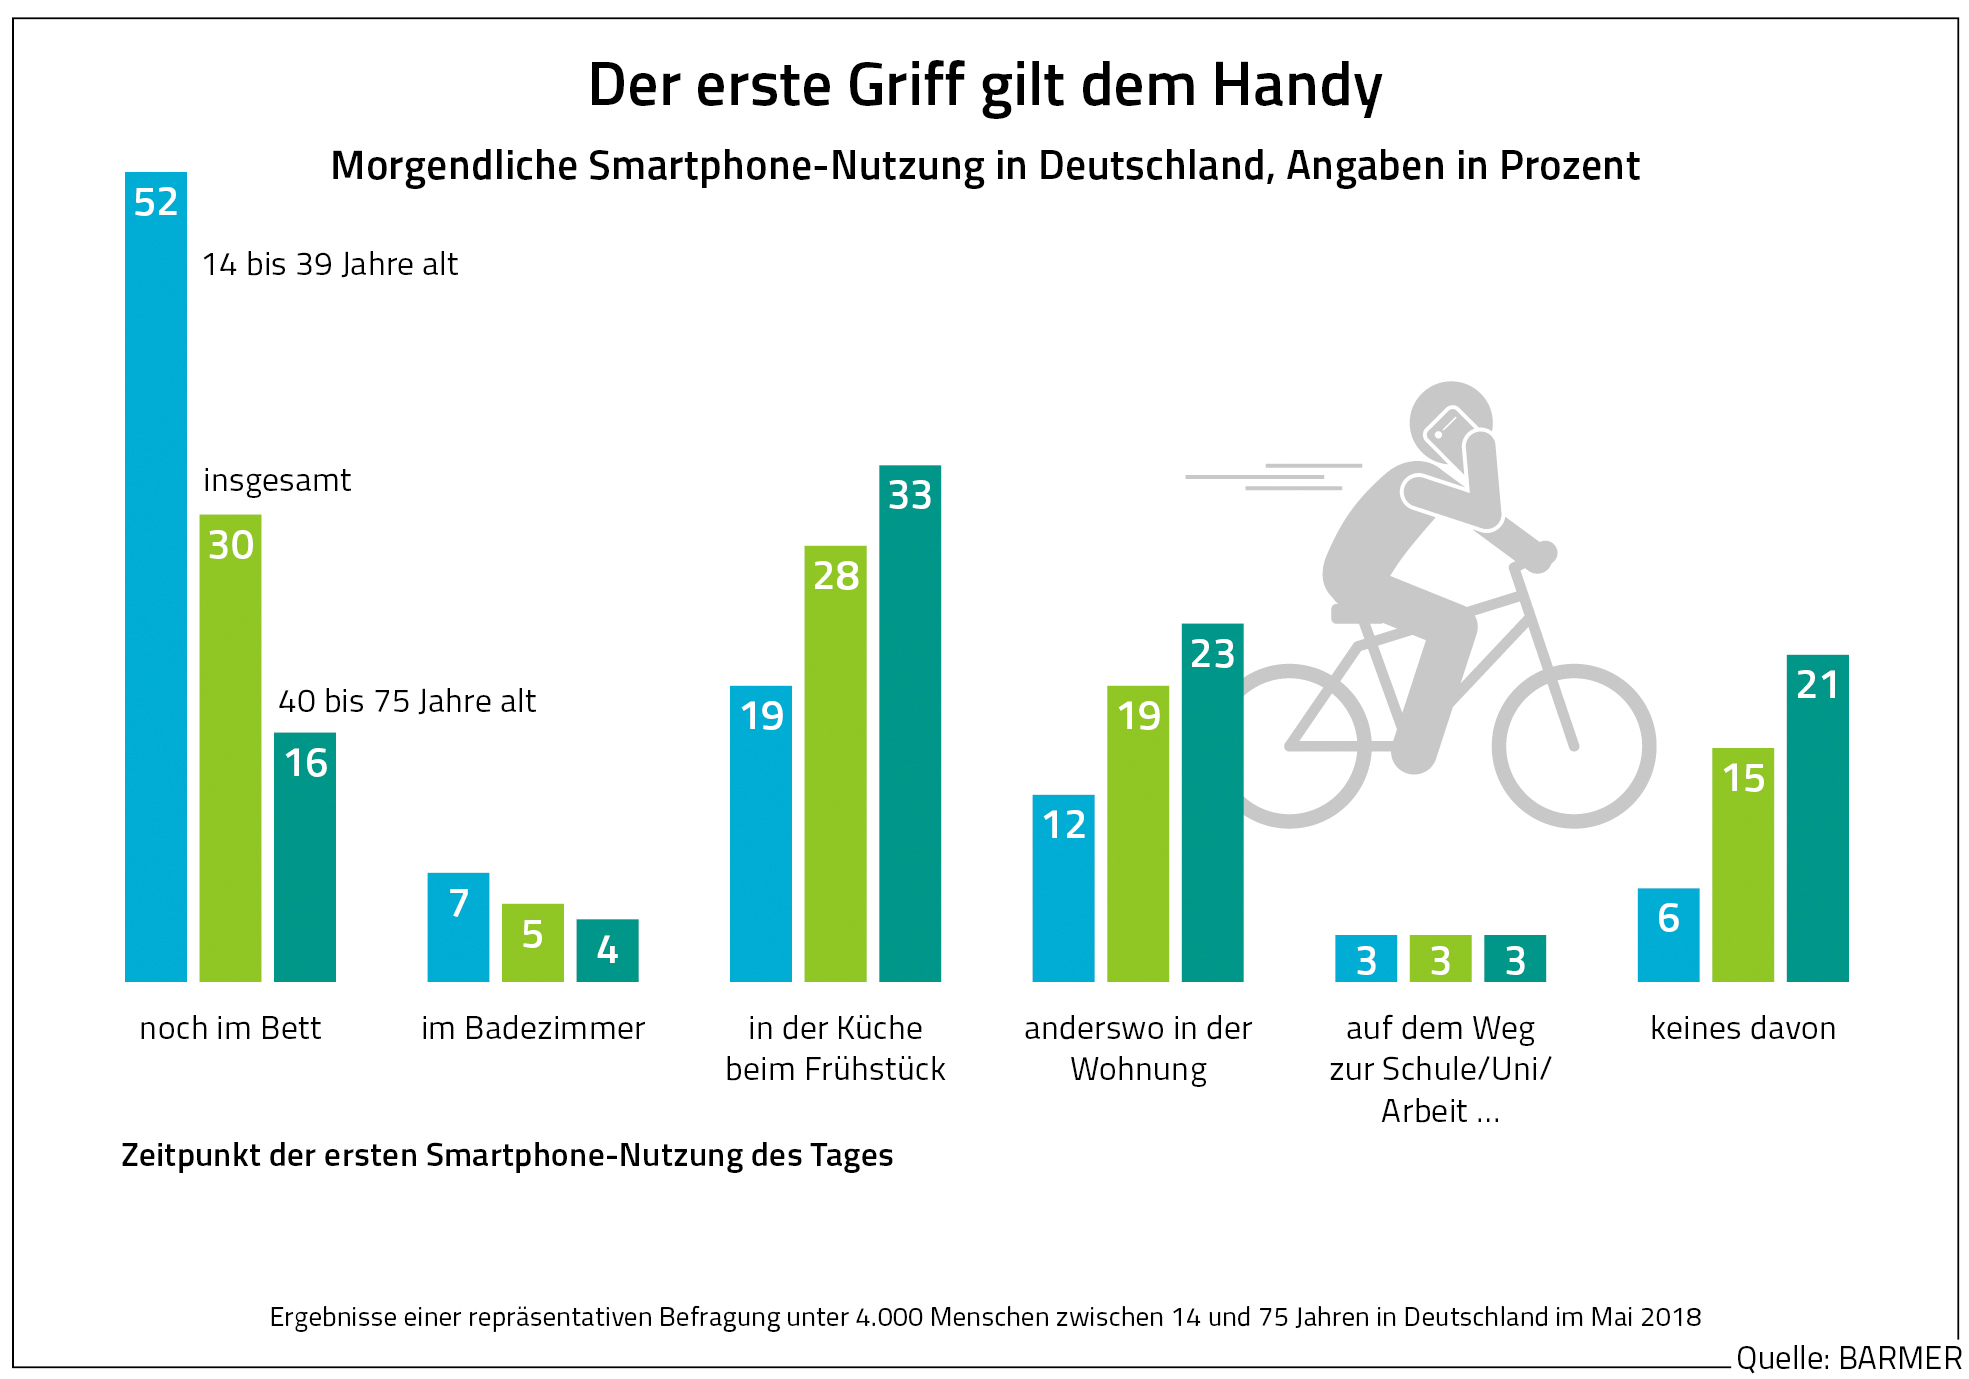 Grafik zeigt die morgendliche Smartphone-Nutzung in Deutschland, Angaben in Prozent